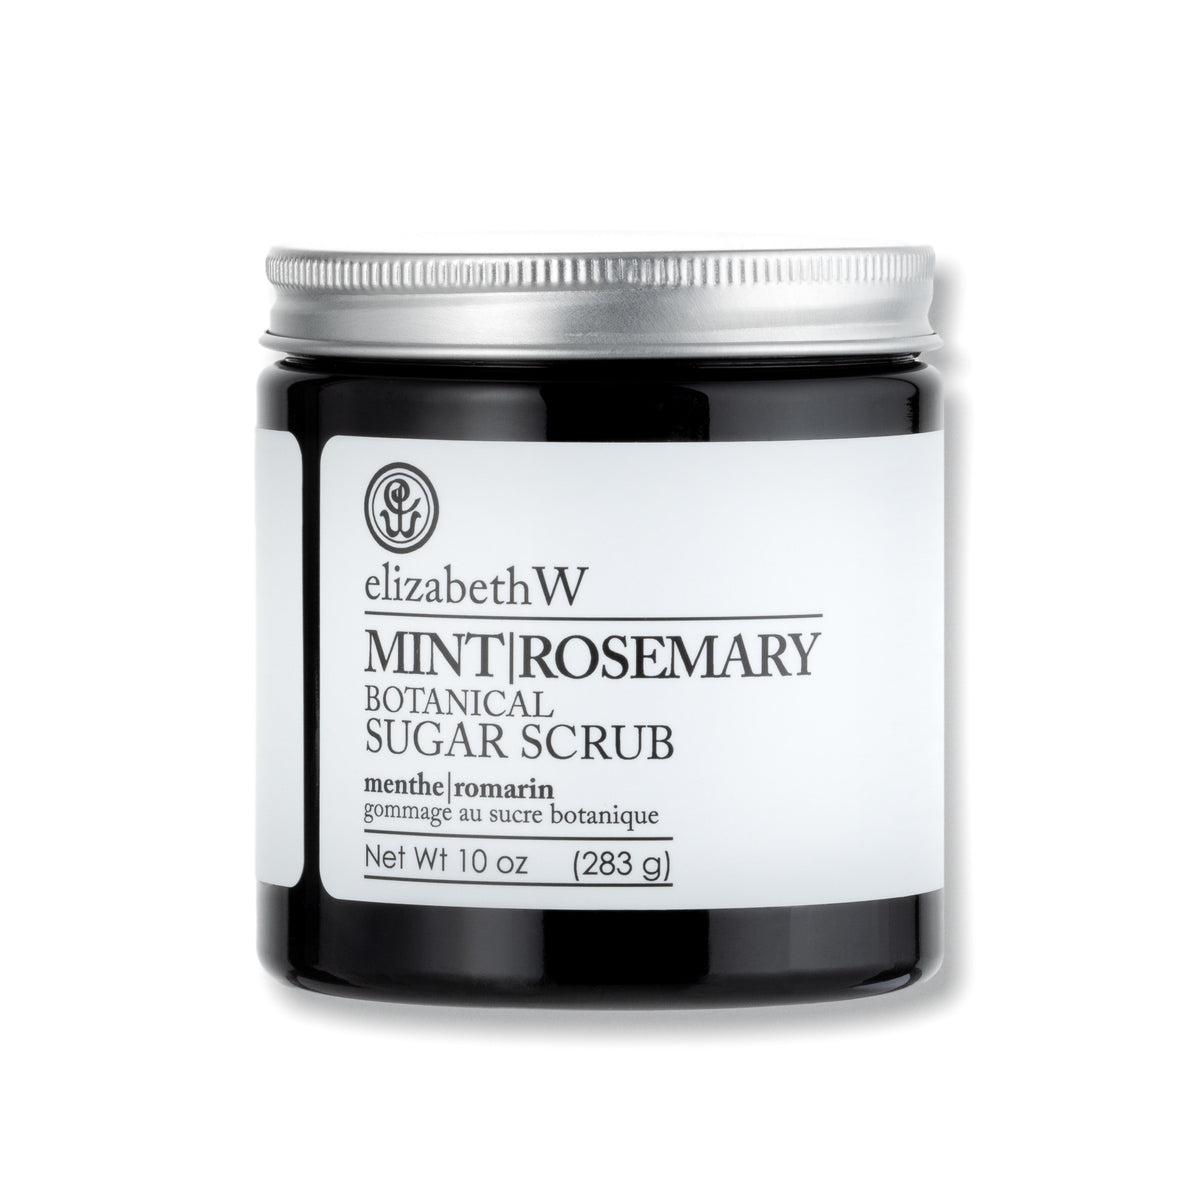 Mint Rosemary Sugar Scrub